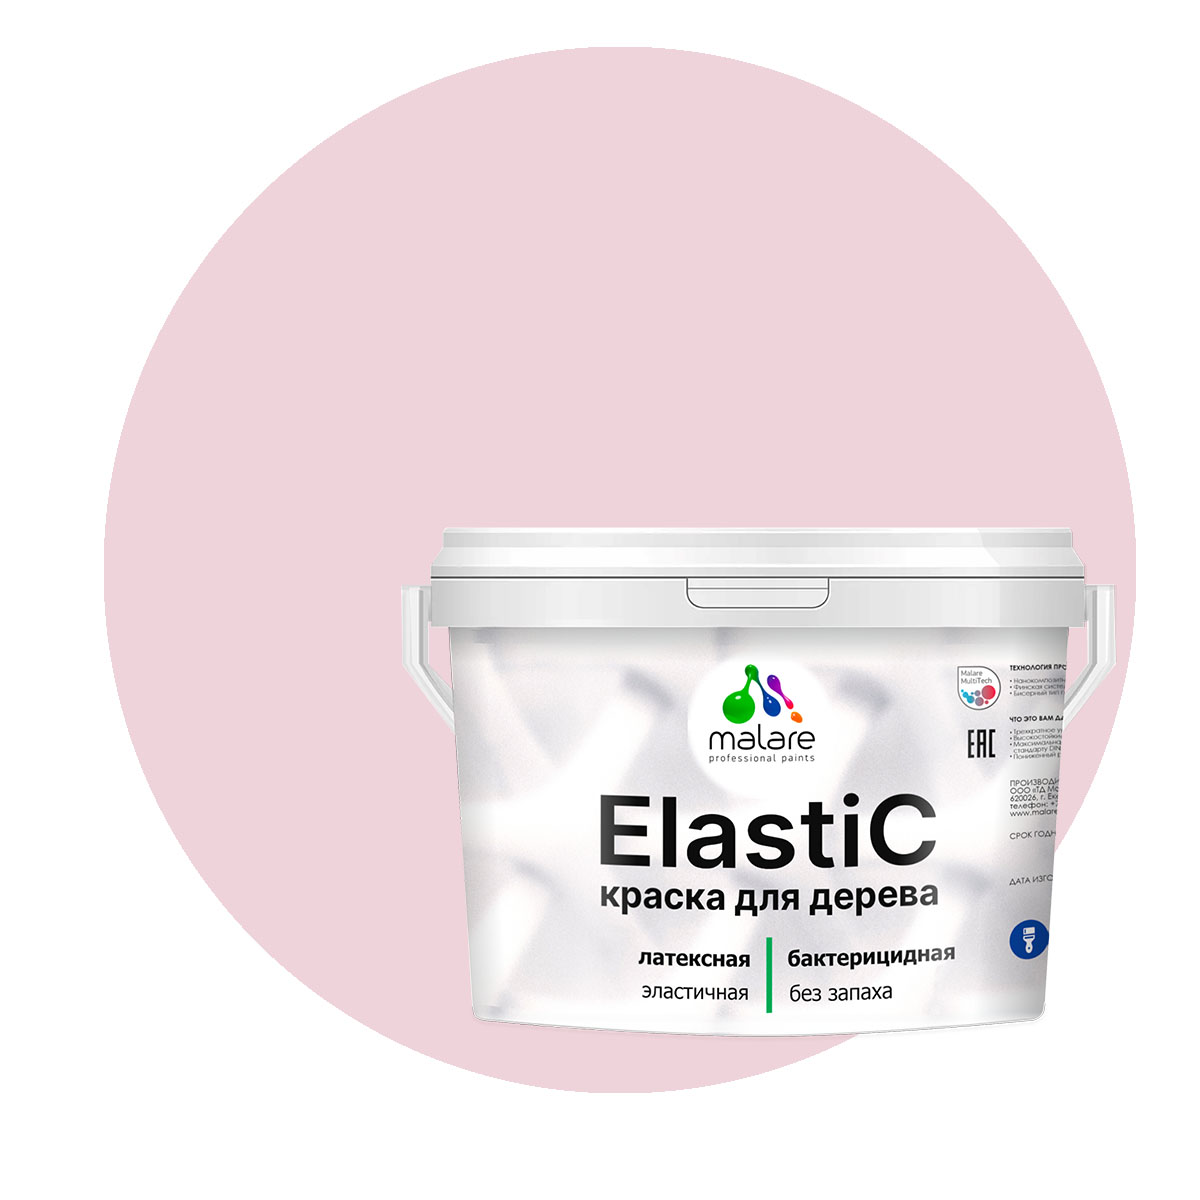 Краска Malare Elastic для деревянных поверхностей, бледно-розовый, 10 кг. краска malare plastic для пластика пвх для сайдинга бледно розовый 10 кг